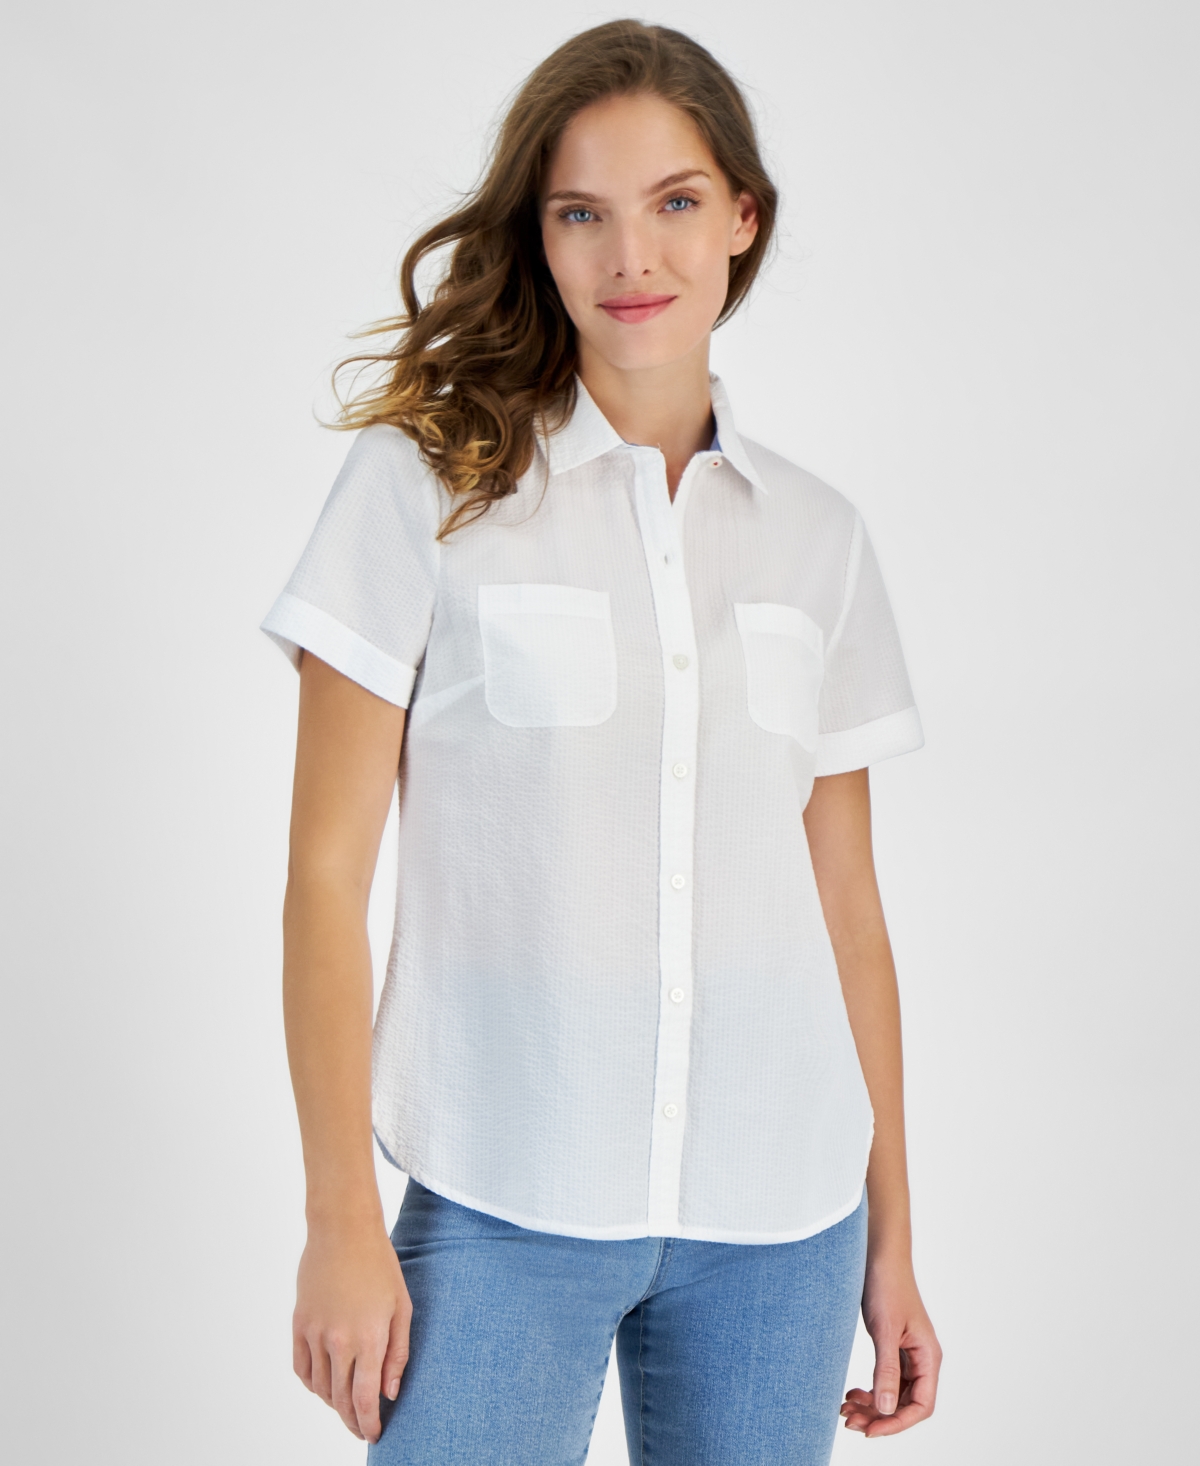 Women's Short-Sleeve Button-Front Shirt - Brt White